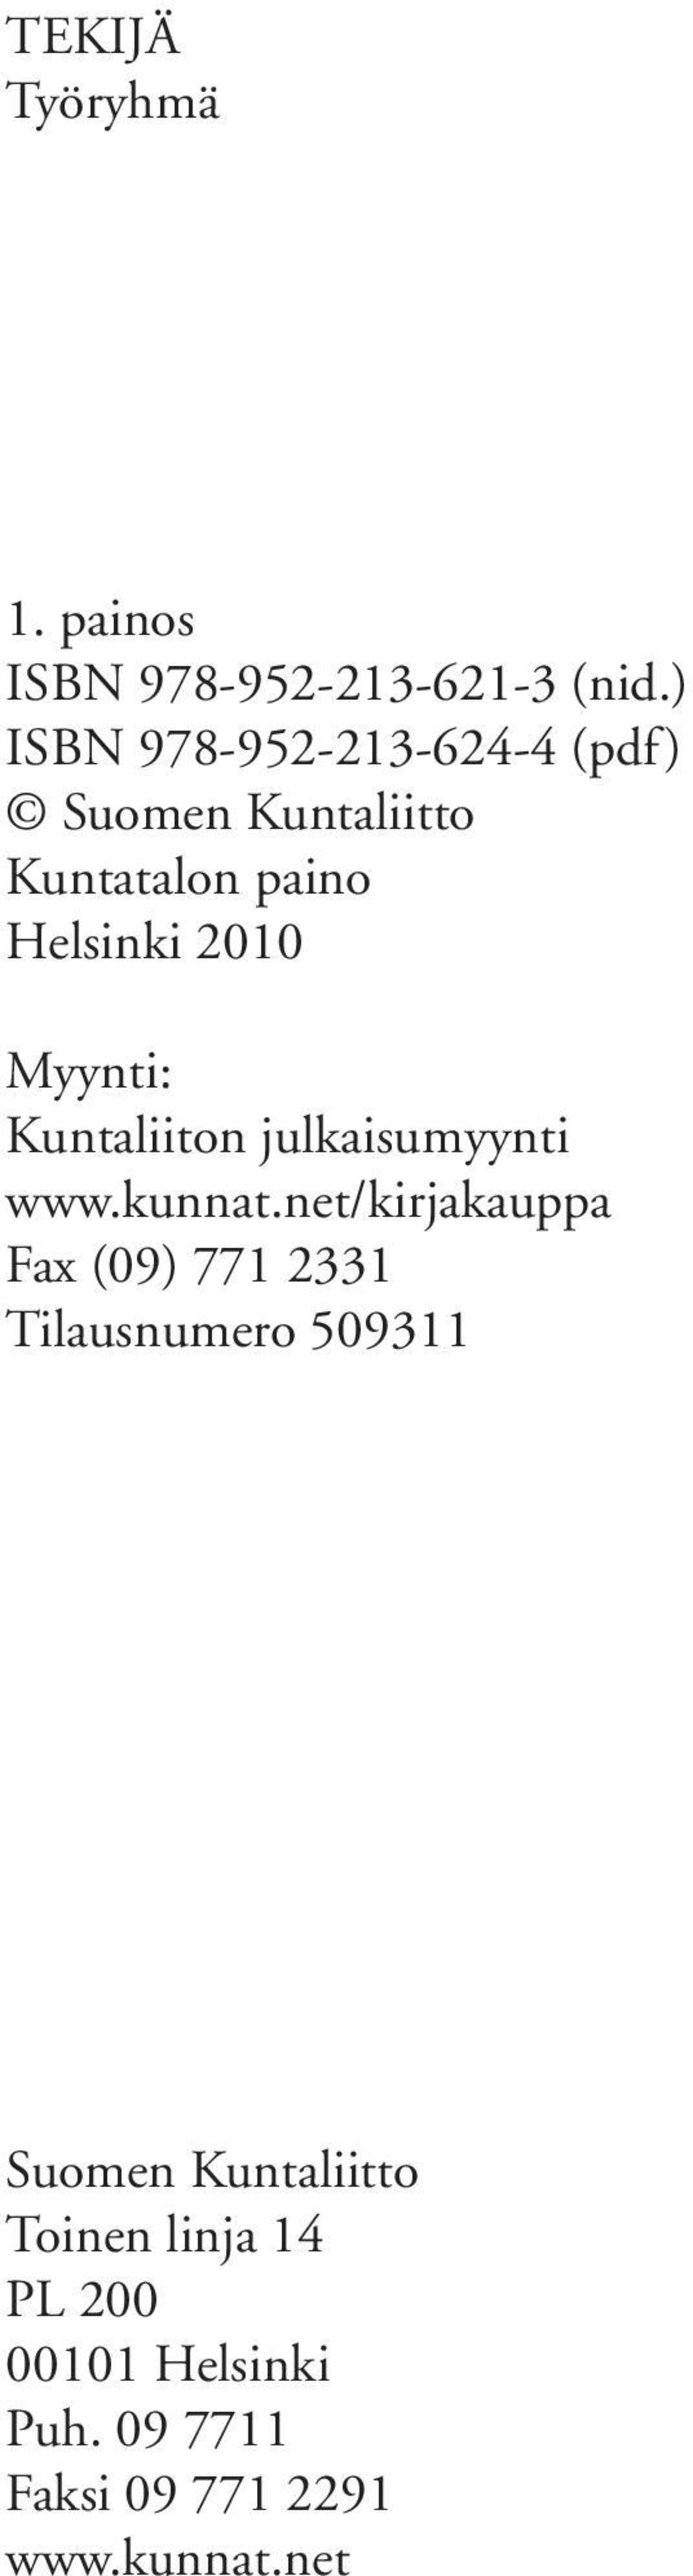 Myynti: Kuntaliiton julkaisumyynti www.kunnat.